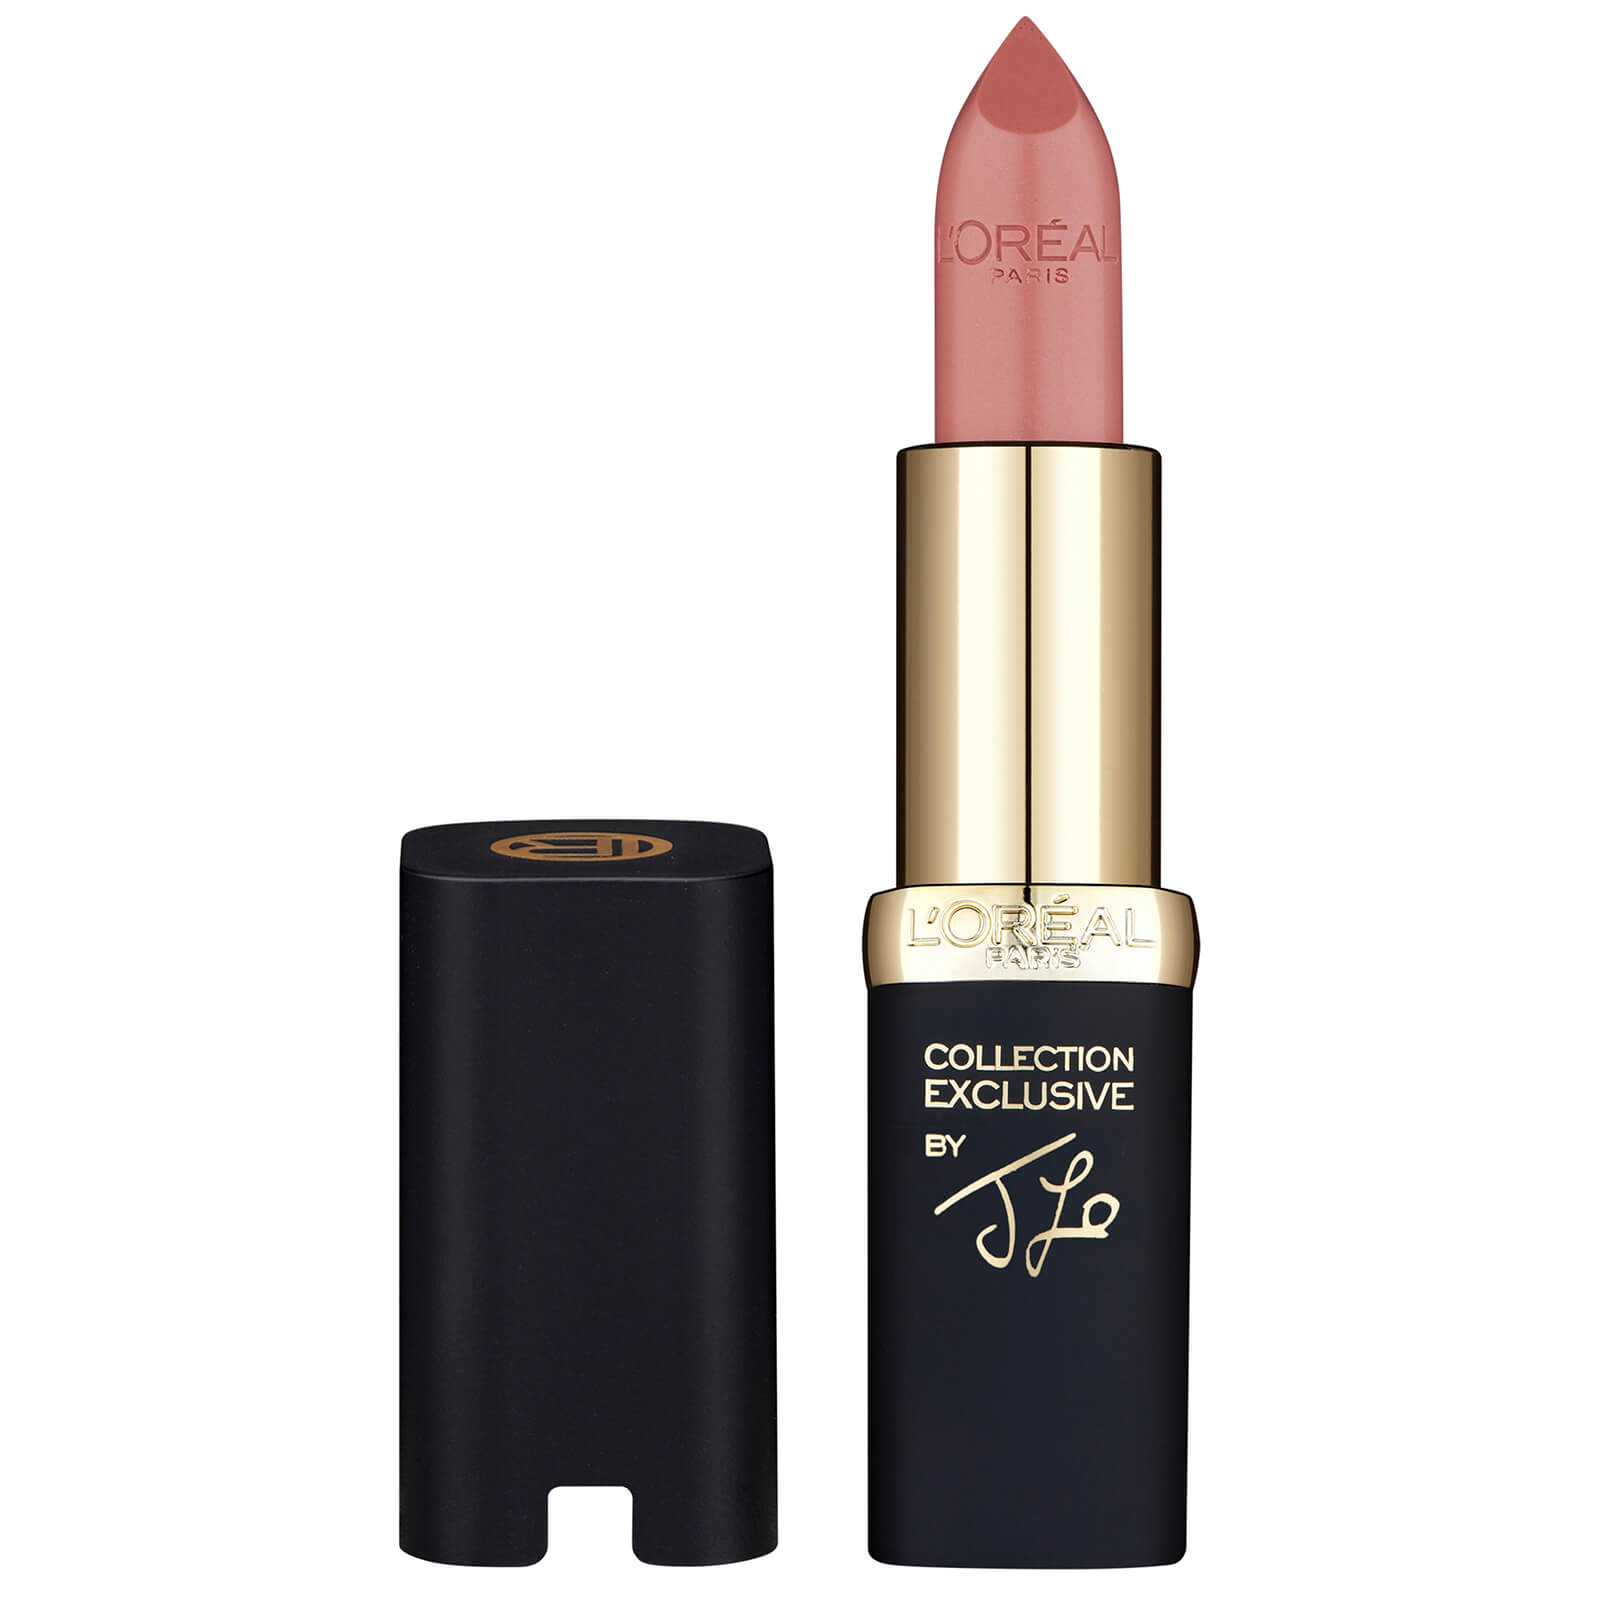 L'Oréal Paris L'Oreal Paris Color Riche Collection Lipstick (ulike nyanser) - JLO's Nude